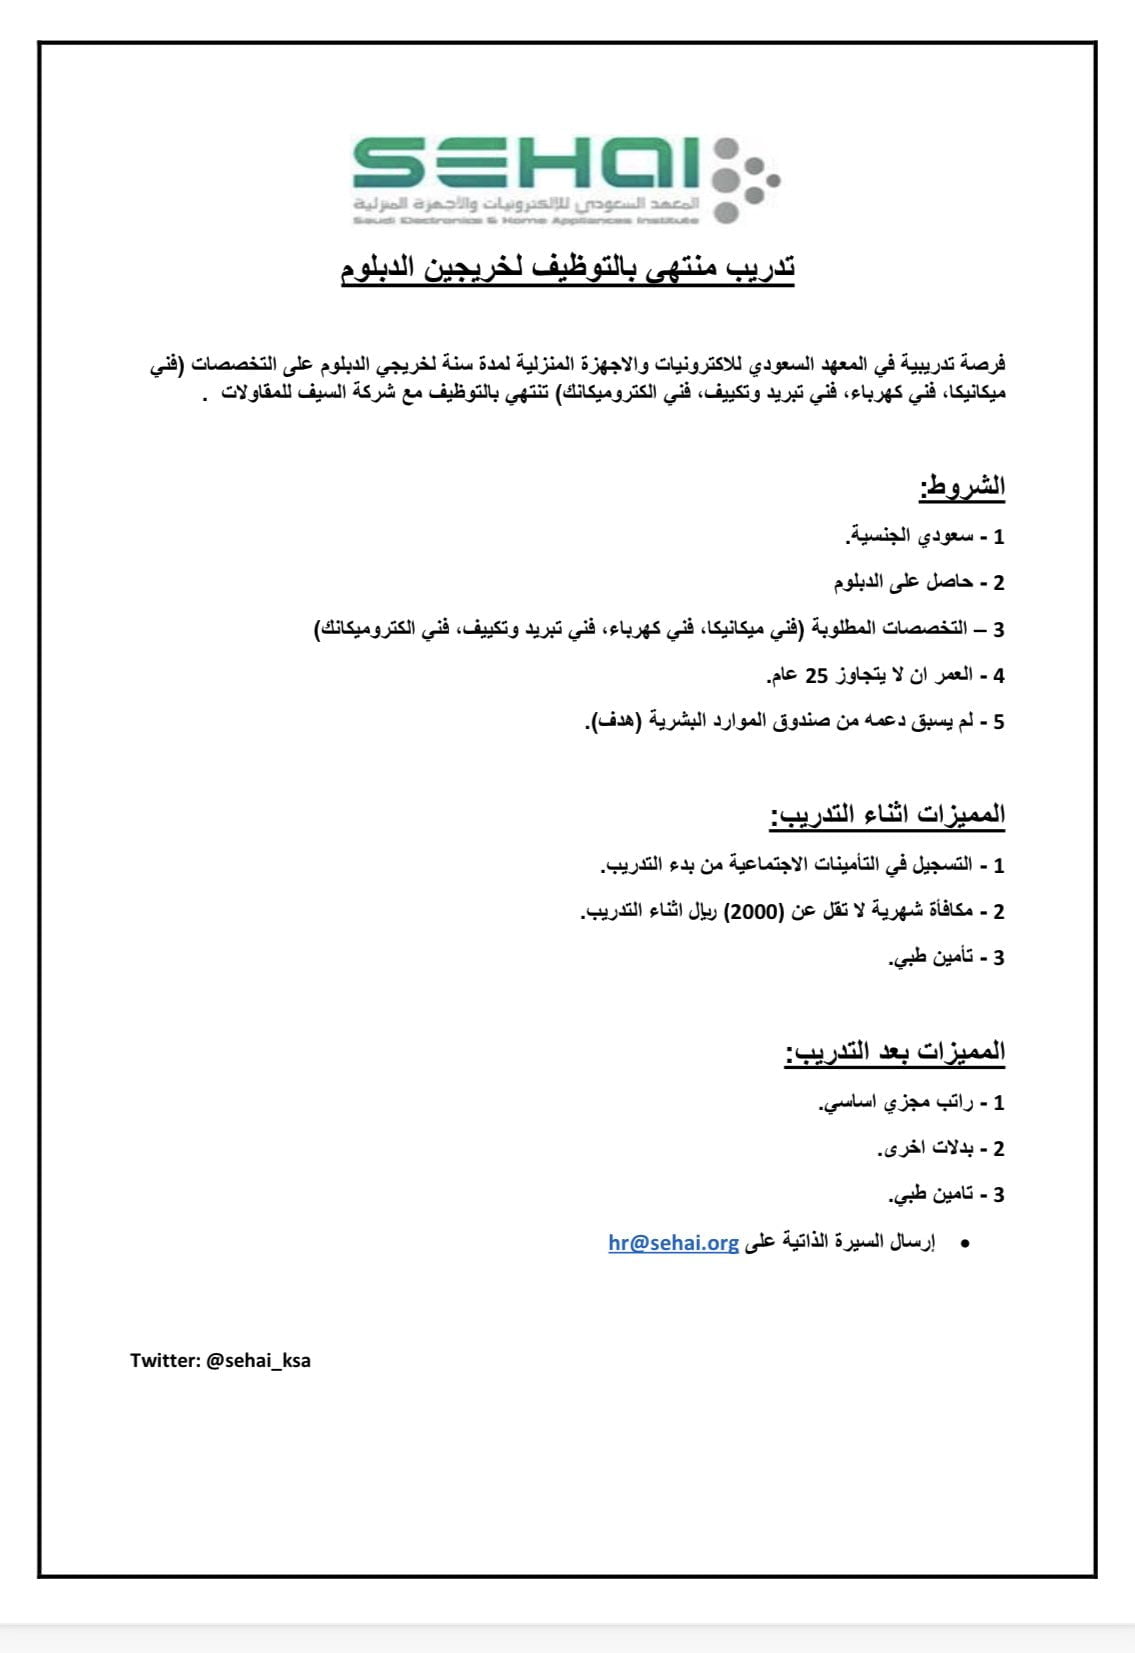 تدريب منتهي بالتوظيف لحملة الدبلوم لدى المعهد السعودي للإلكترونيات 3